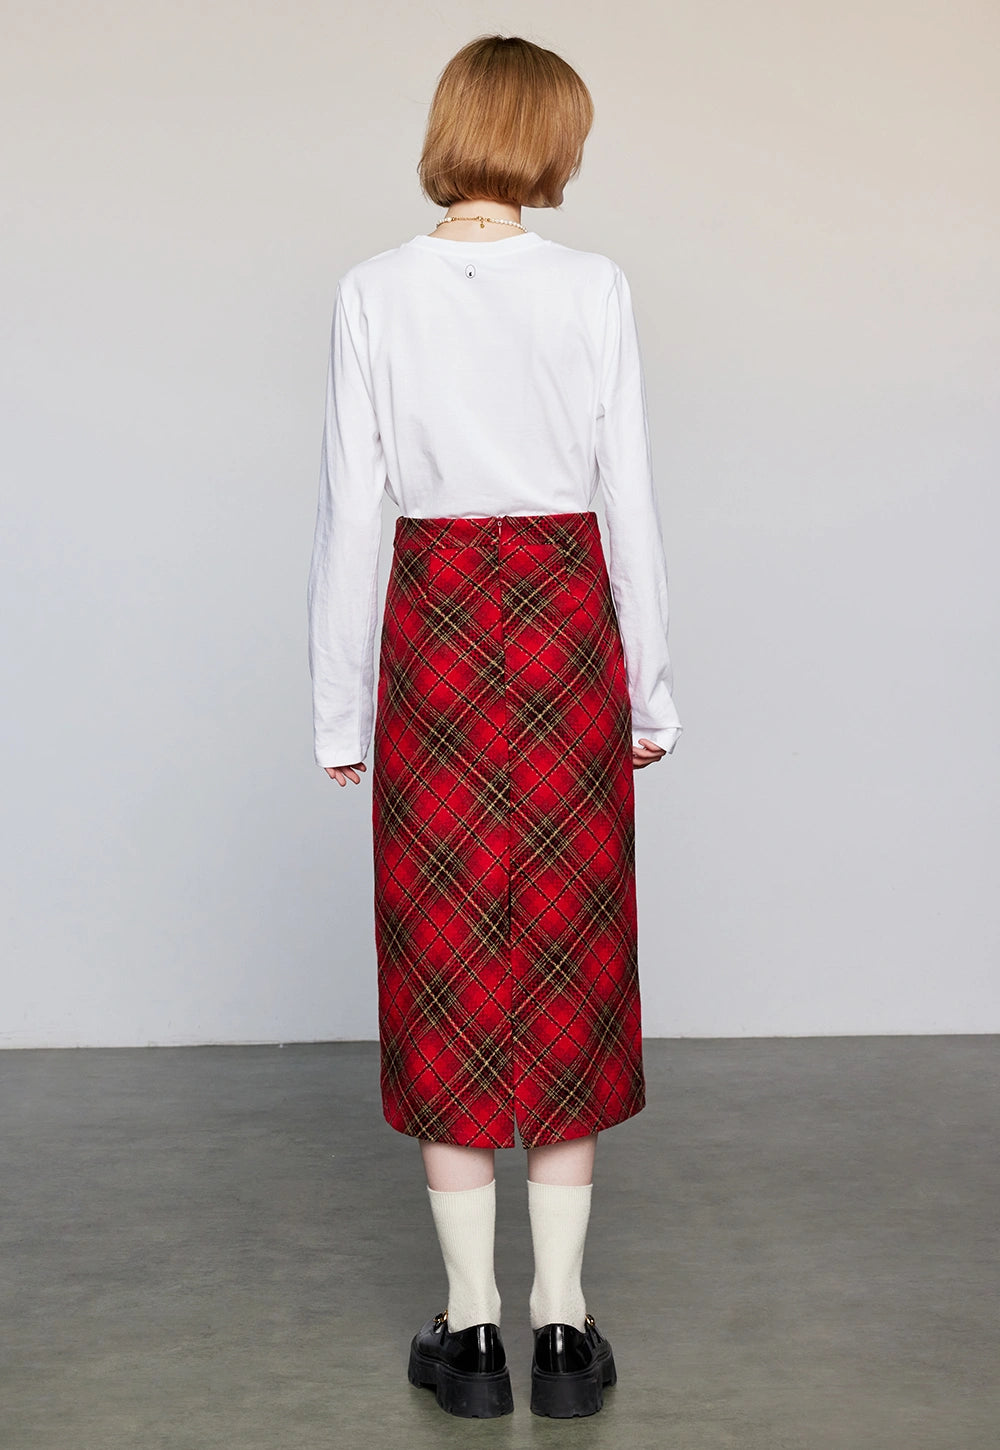 Women's High-Waist Plaid A-Line Skirt with Pockets